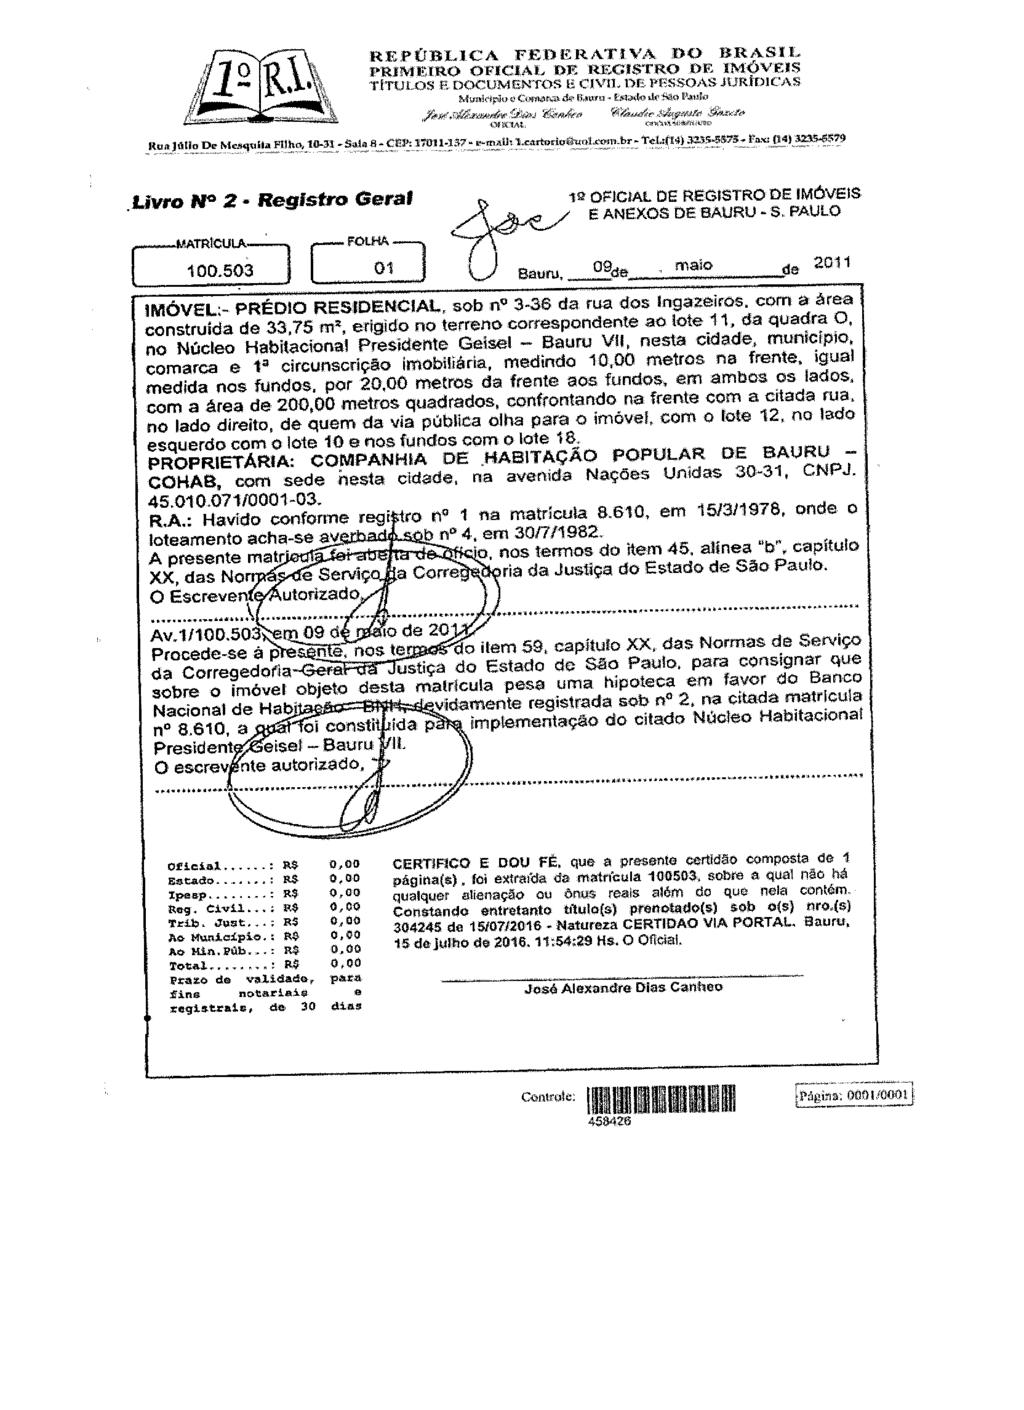 fls. 90 Este documento é cópia do original, assinado digitalmente por MARIO ALEXANDRE BUENO DE CAMARGO, liberado nos autos em 20/07/2016 às 09:25.